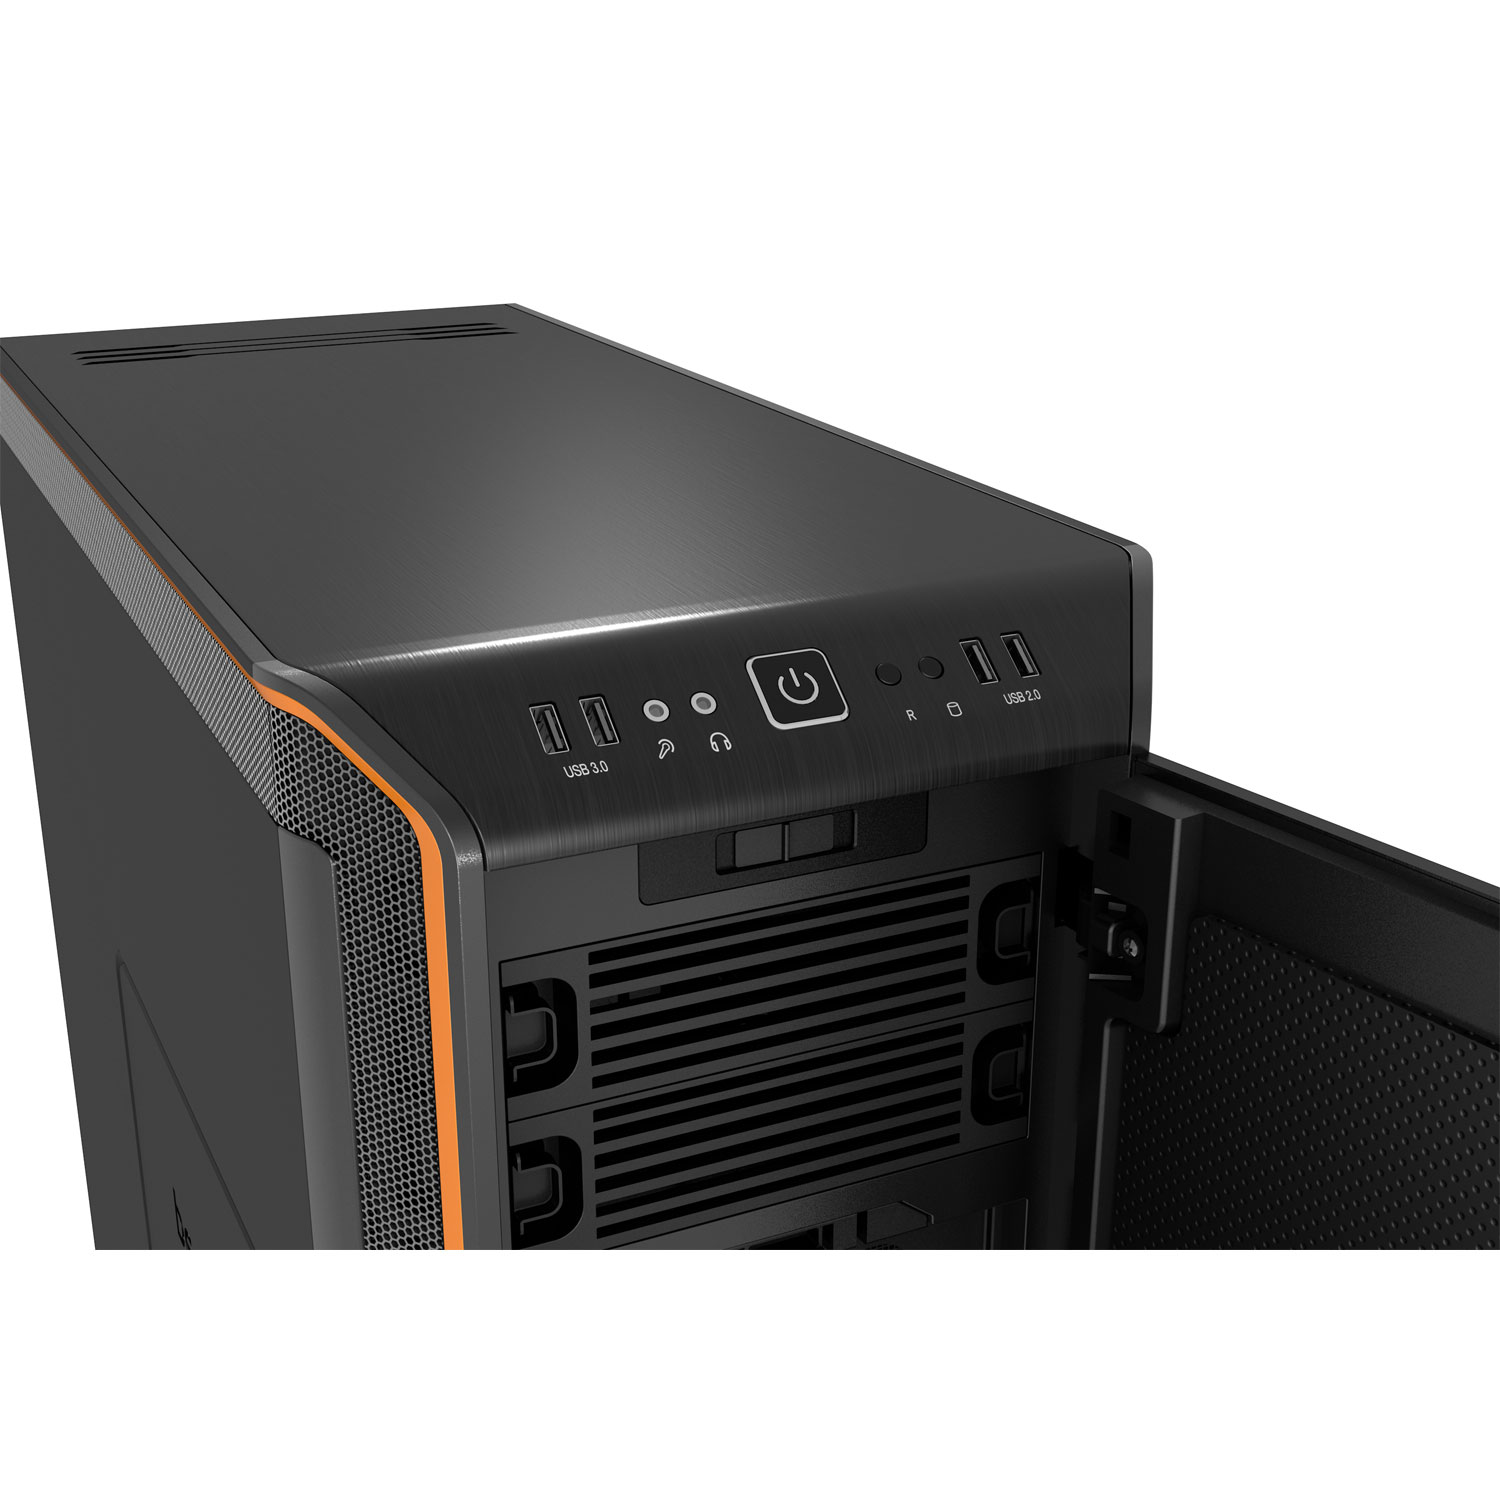 Boitier PC Be Quiet Dark Base 900 Noir/Orange(sans alim), informatique ile de la Runion 974